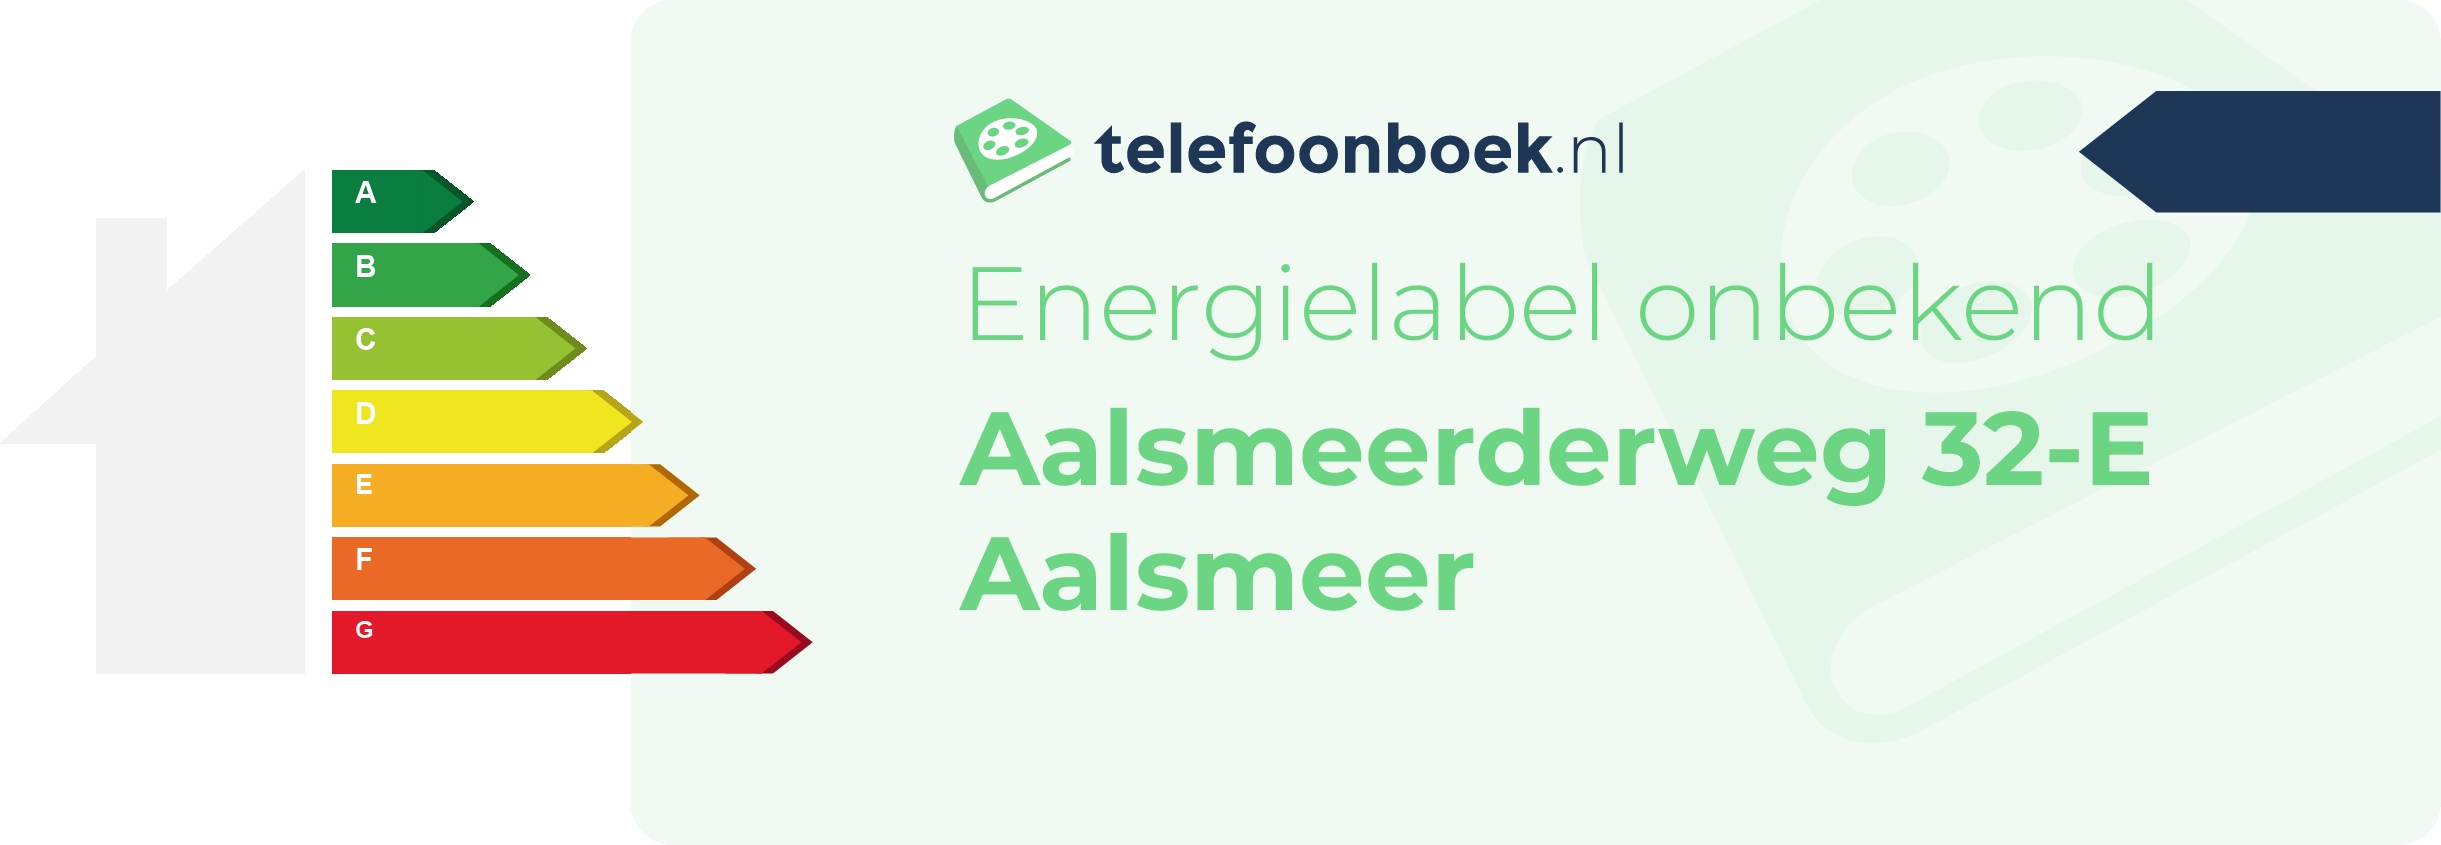 Energielabel Aalsmeerderweg 32-E Aalsmeer